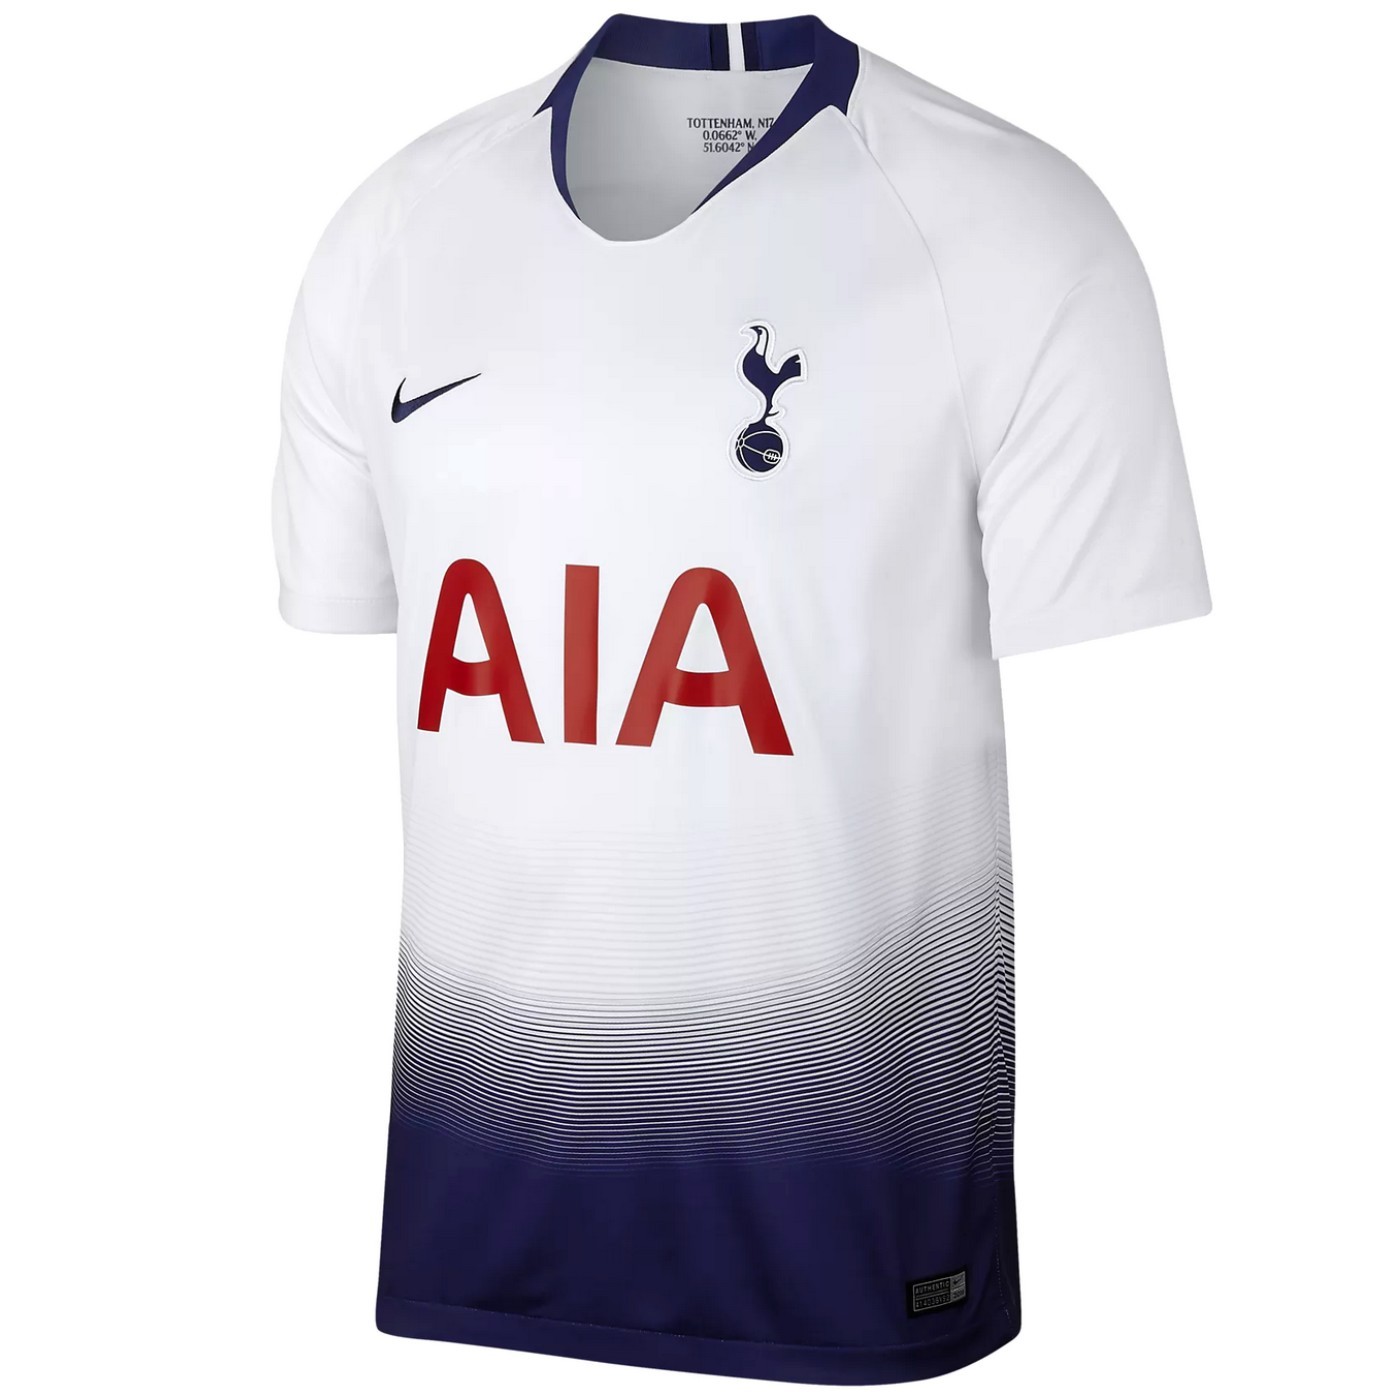 Camisetas del Tottenham 2018-2019 / Webtuti Fútbol 